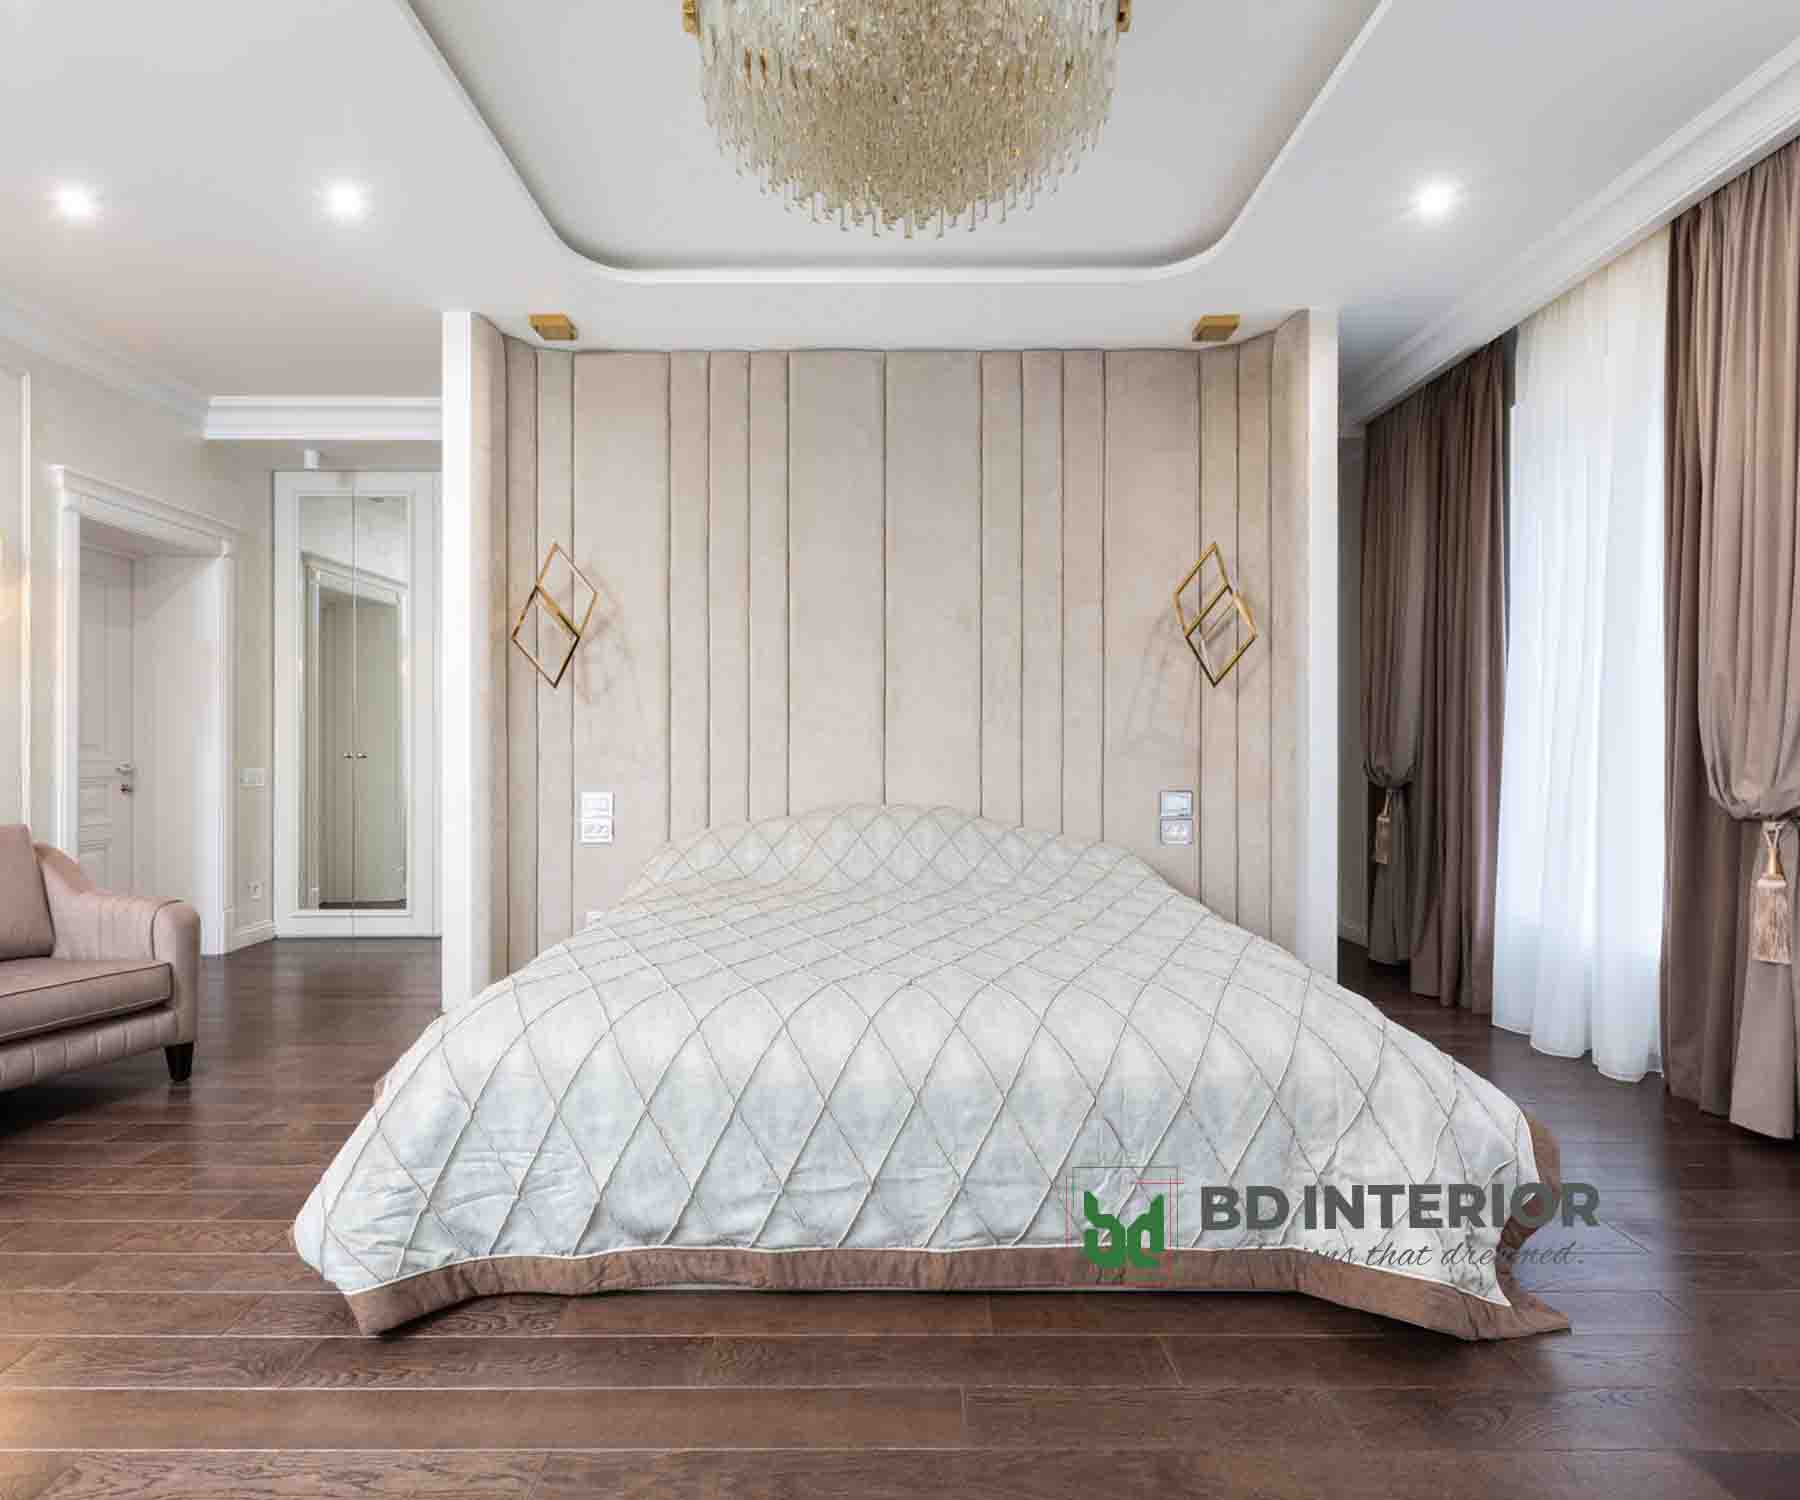 bedroom interior design bd